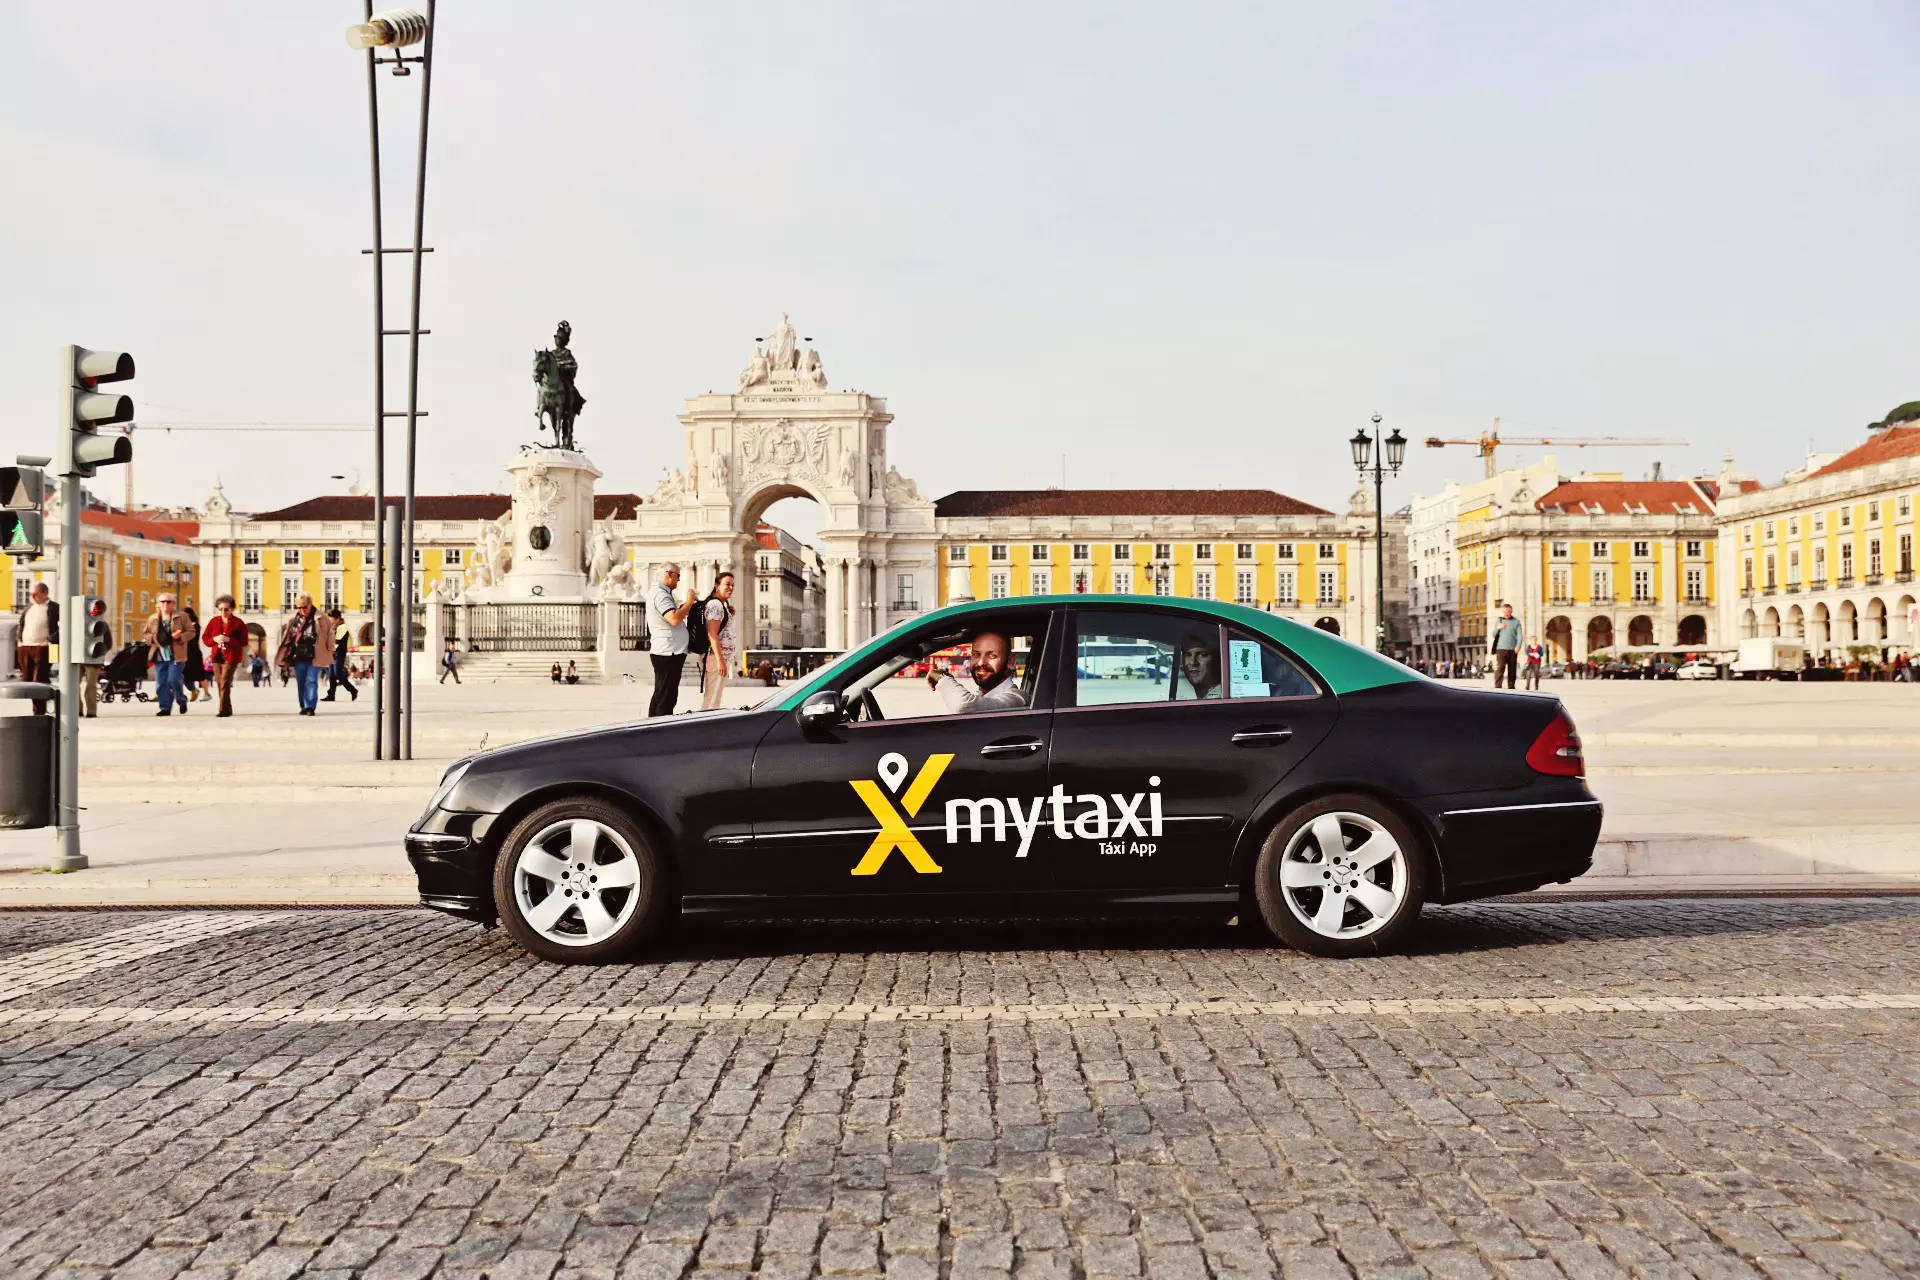 Водитель такси бизнес класса. Европейское такси. Бизнес такси машины. Такси бизнес класса. Машины бизнес класса такси.